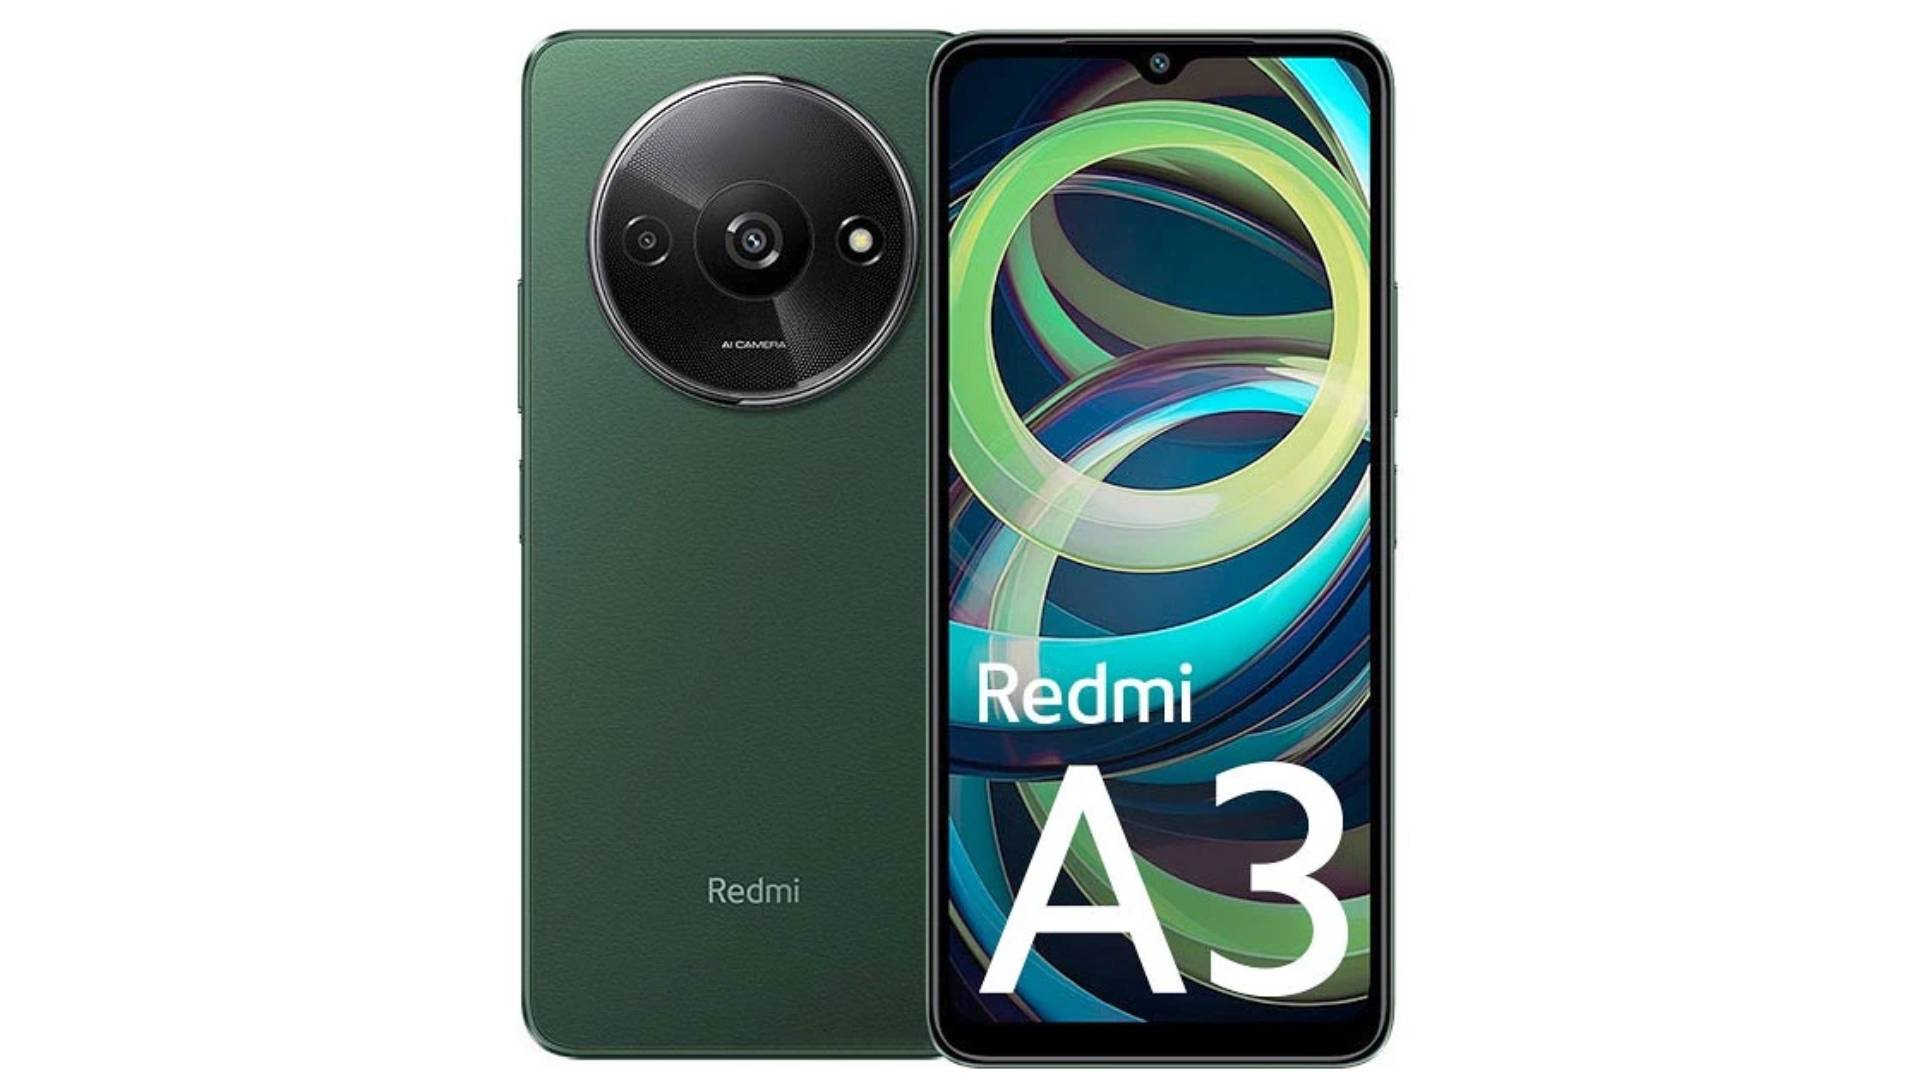 گوشی موبایل شیائومی مدل Redmi A3 ظرفیت 64 و رم 3 گیگابایت